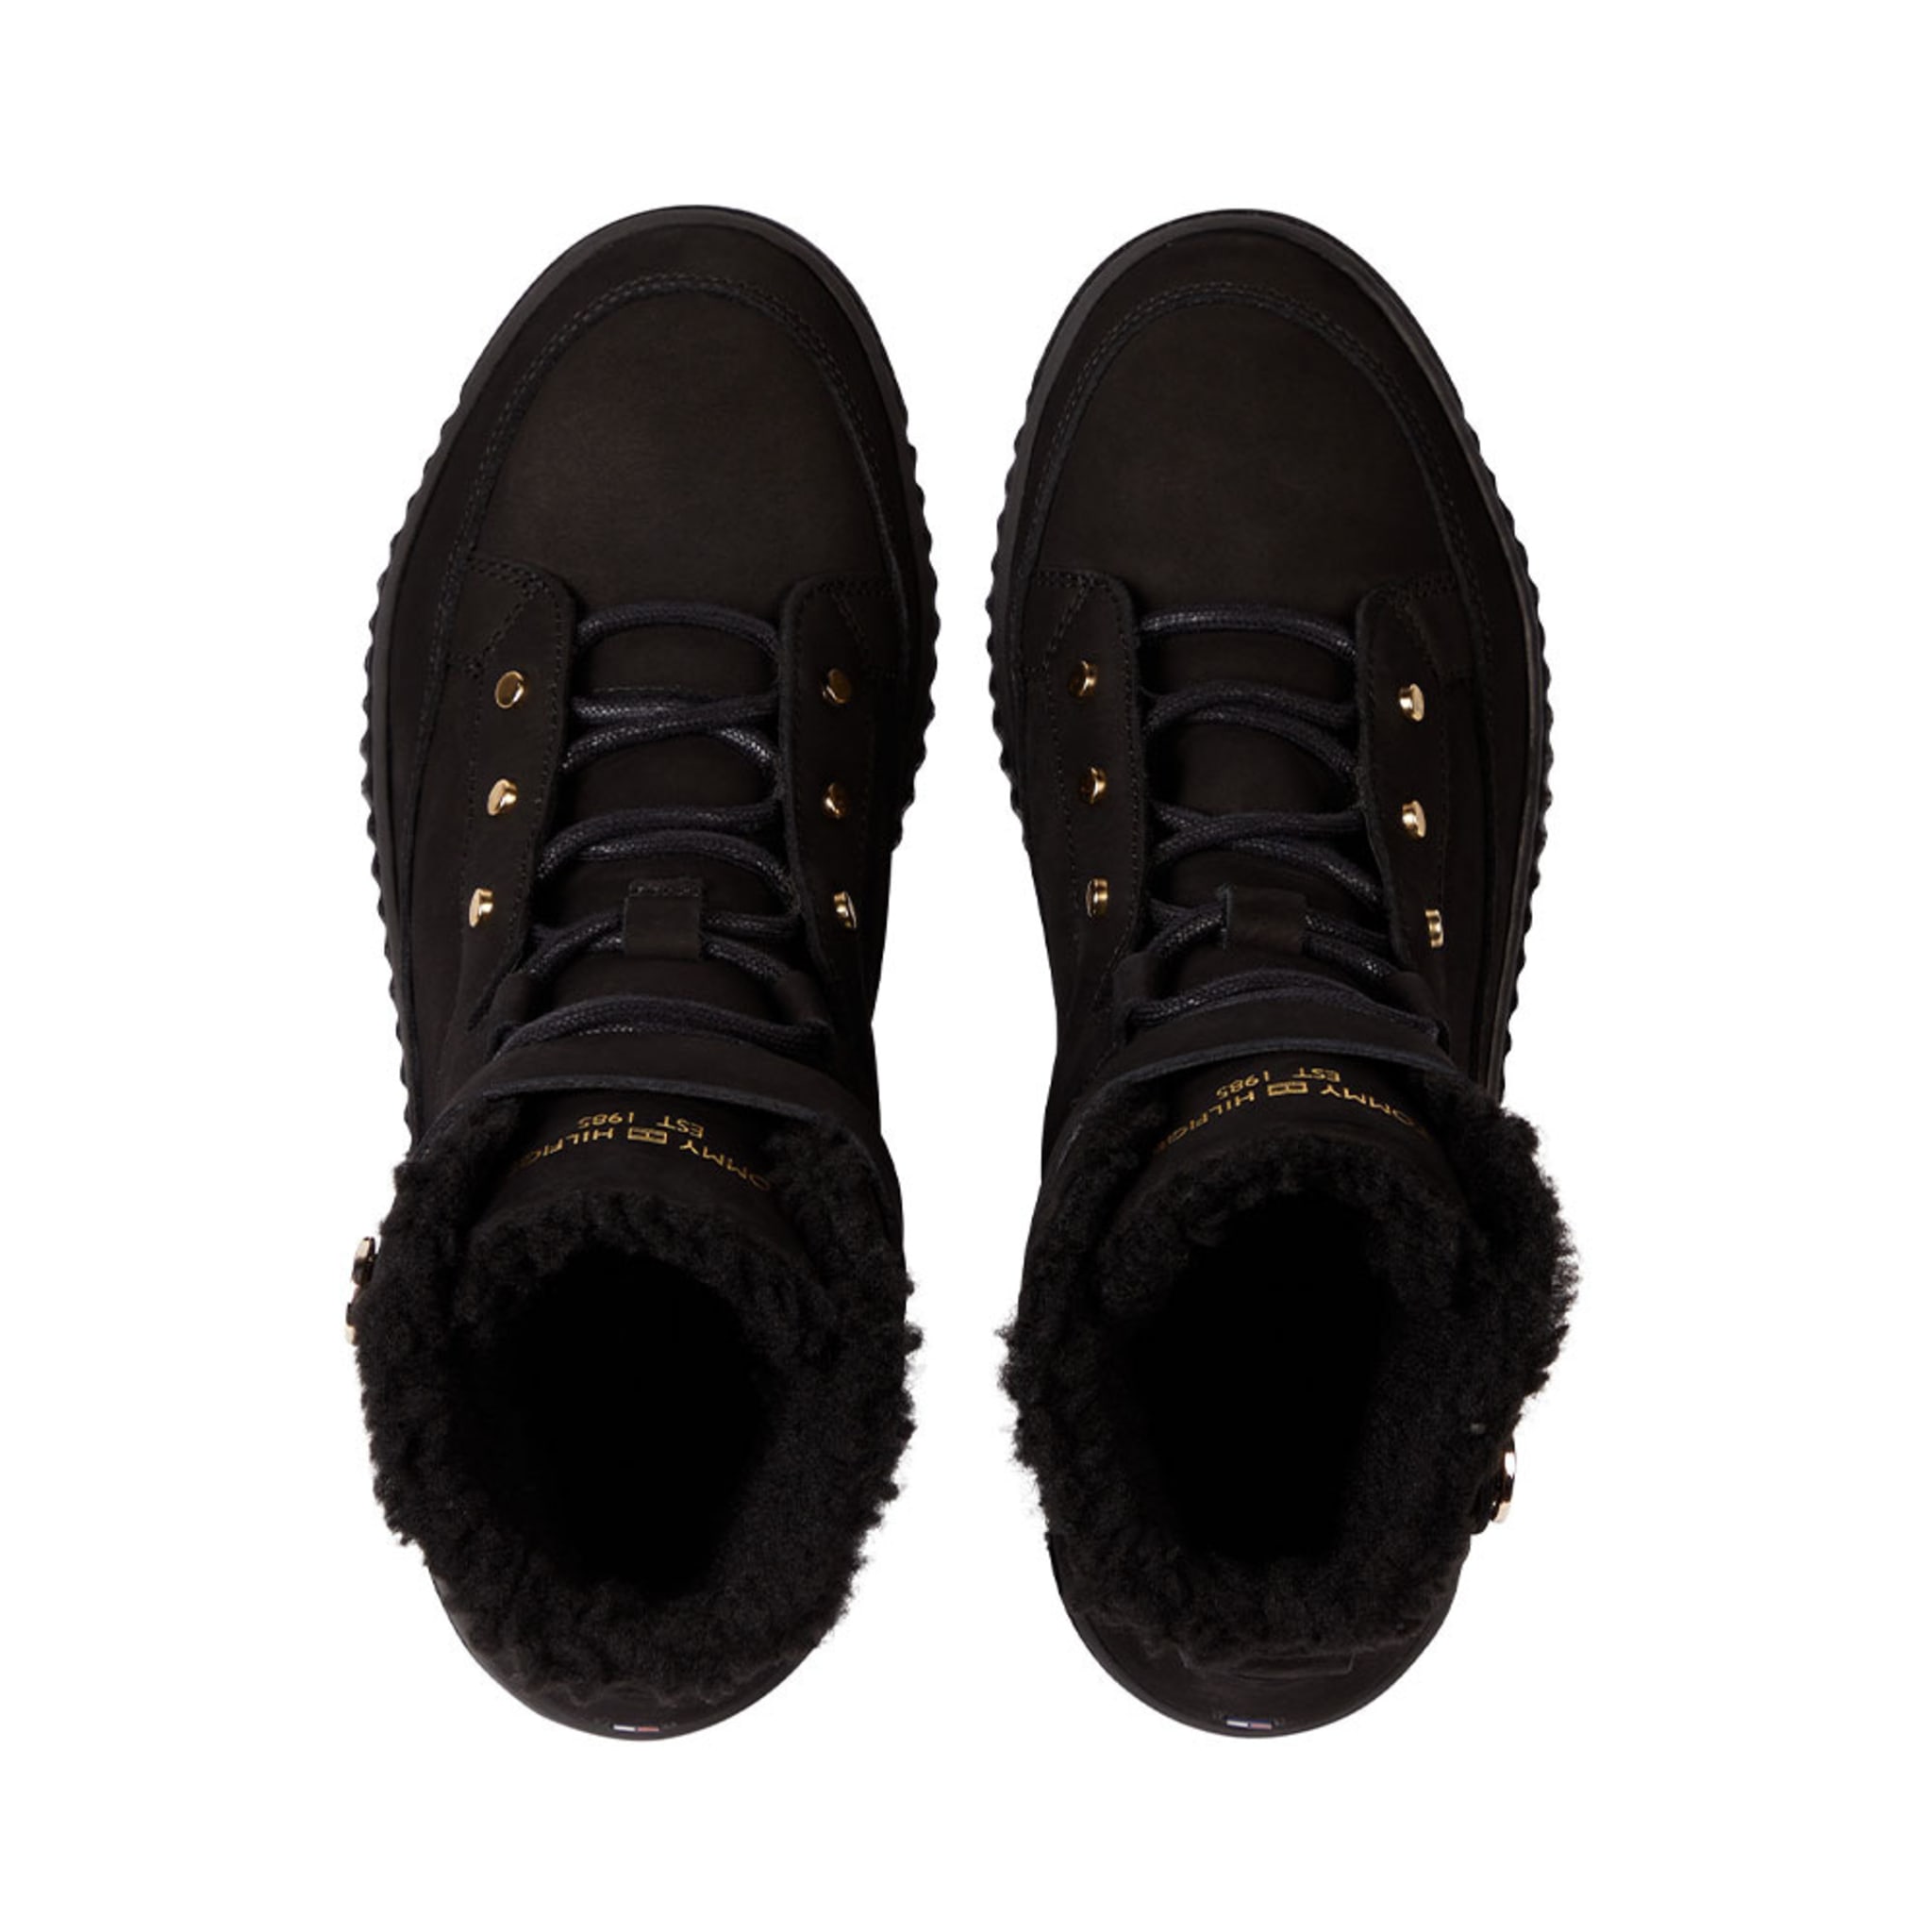 Warmlined Lace Up Boot i Black från Tommy Hilfiger | Åhlens